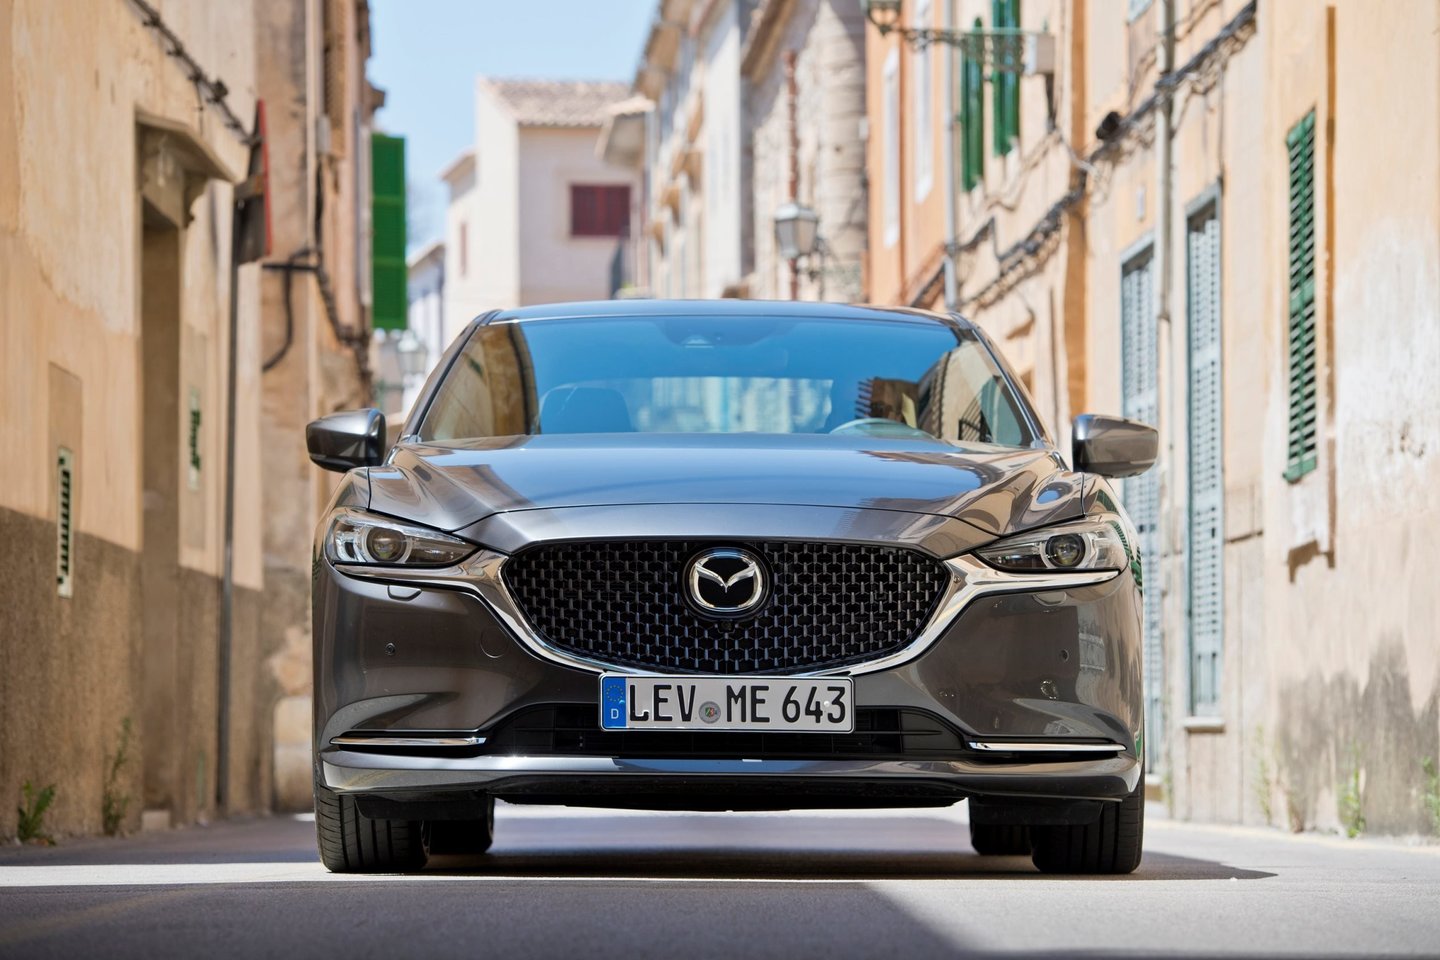  Atnaujinta „Mazda 6“ mūsų šalies prekybos salonuose pasirodys jau rugsėjo mėnesį. <br> Gamintojo nuotr.